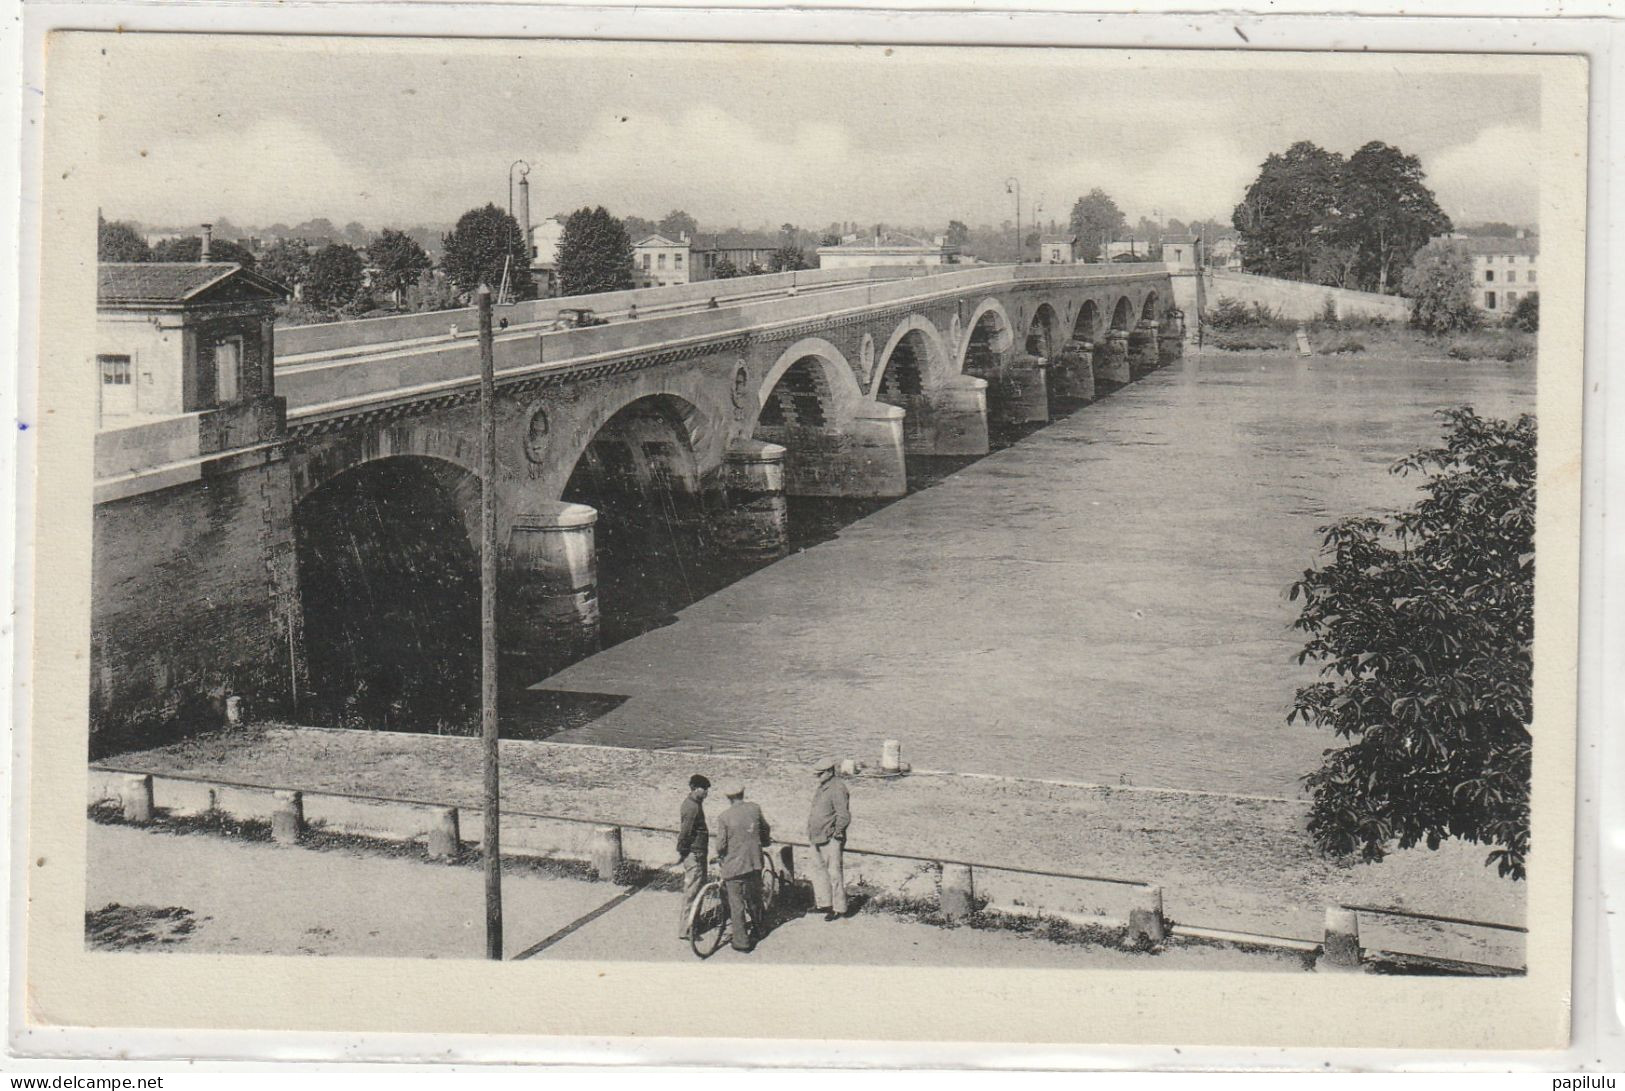 310 DEPT 33 : édit. Cap N° 89 : Libourne Le Pont De Bordeaux - Libourne